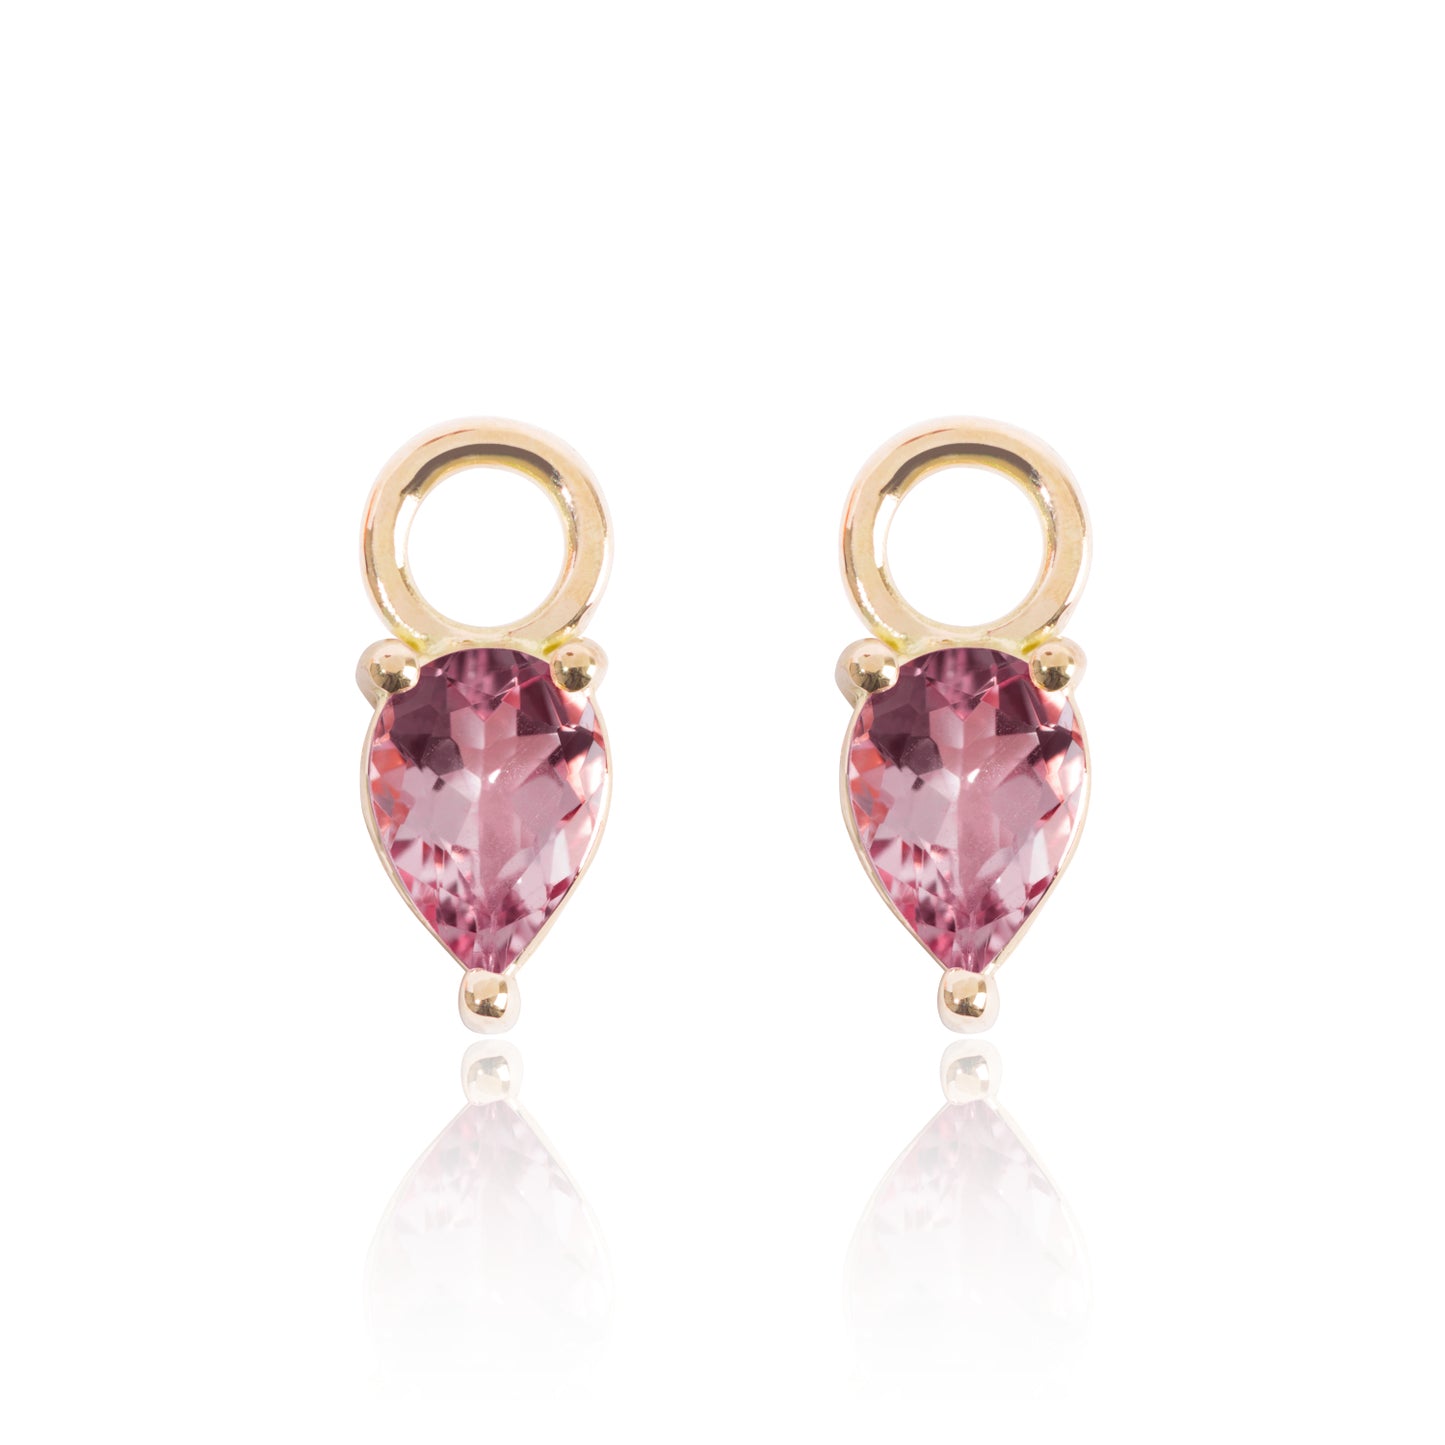 Bright Pink Tourmaline Earring Pendants by McFarlane Fine Jewellery